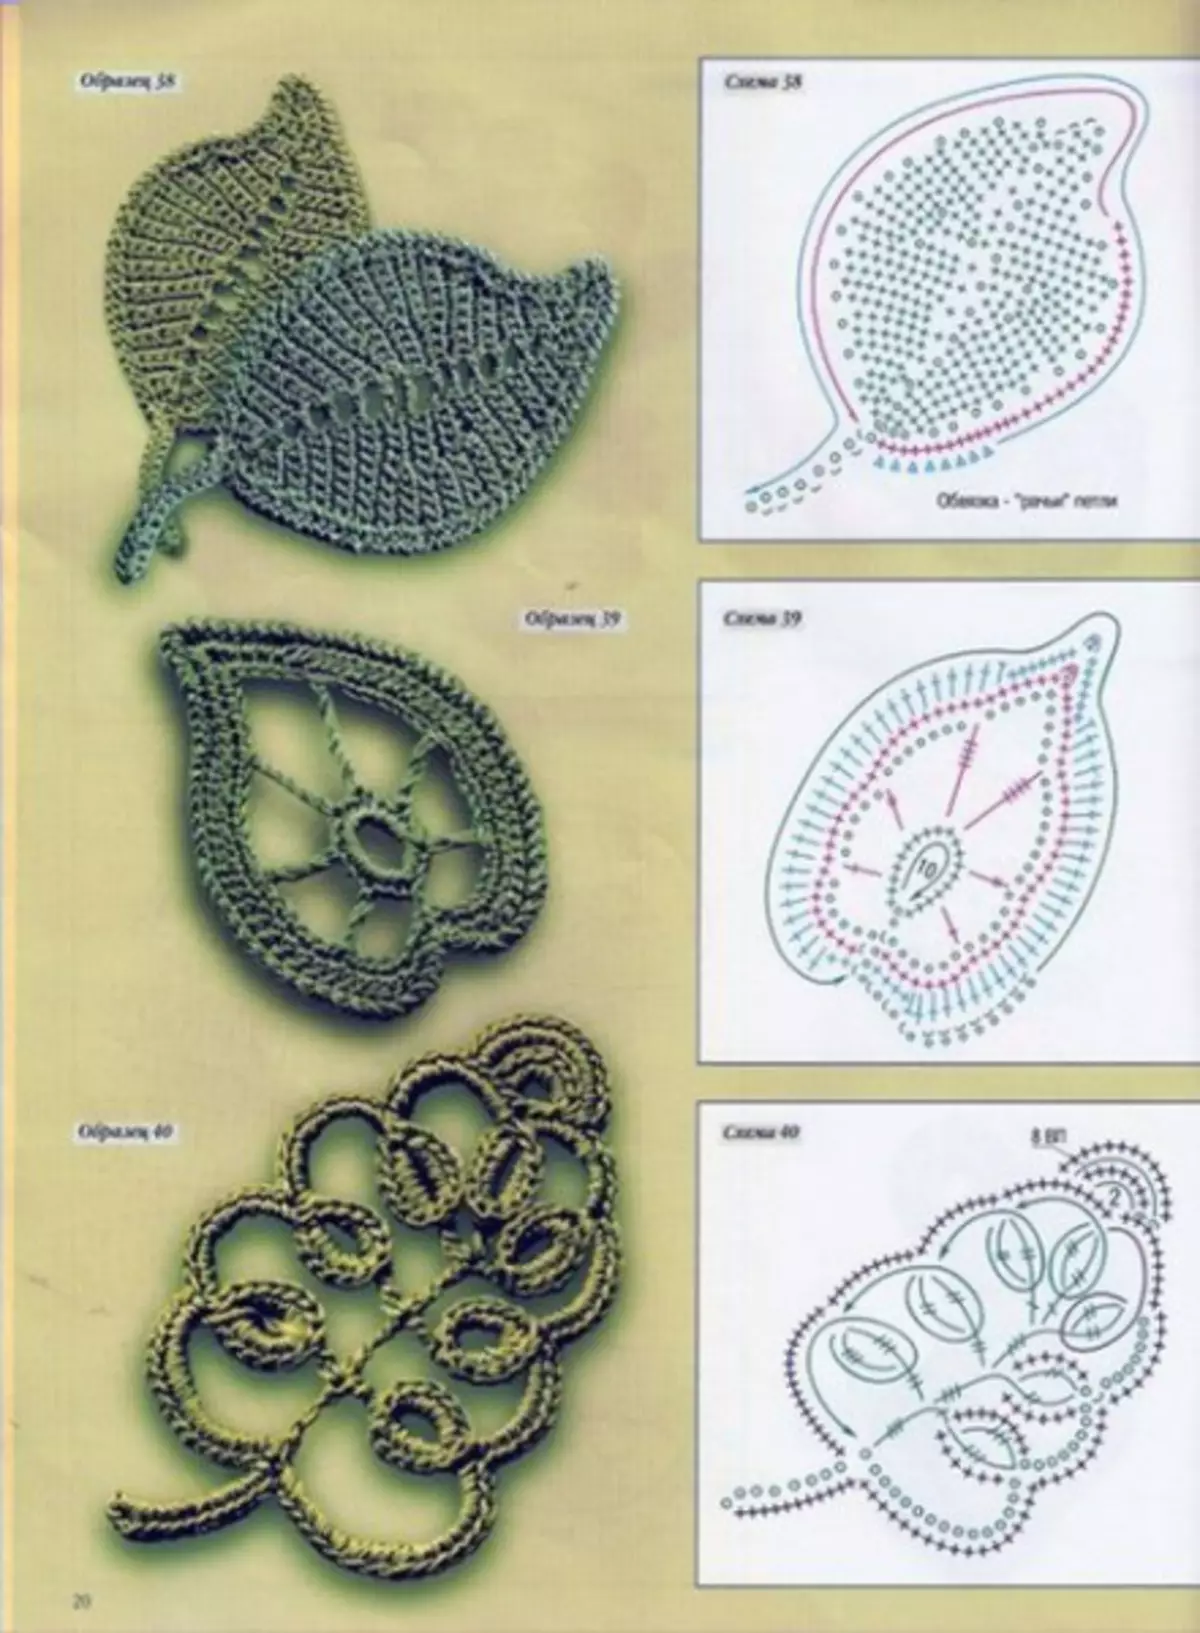 Crochet տերեւ `սխեմայով. Վարպետության դաս` նկարագրության եւ տեսանյութի հետ